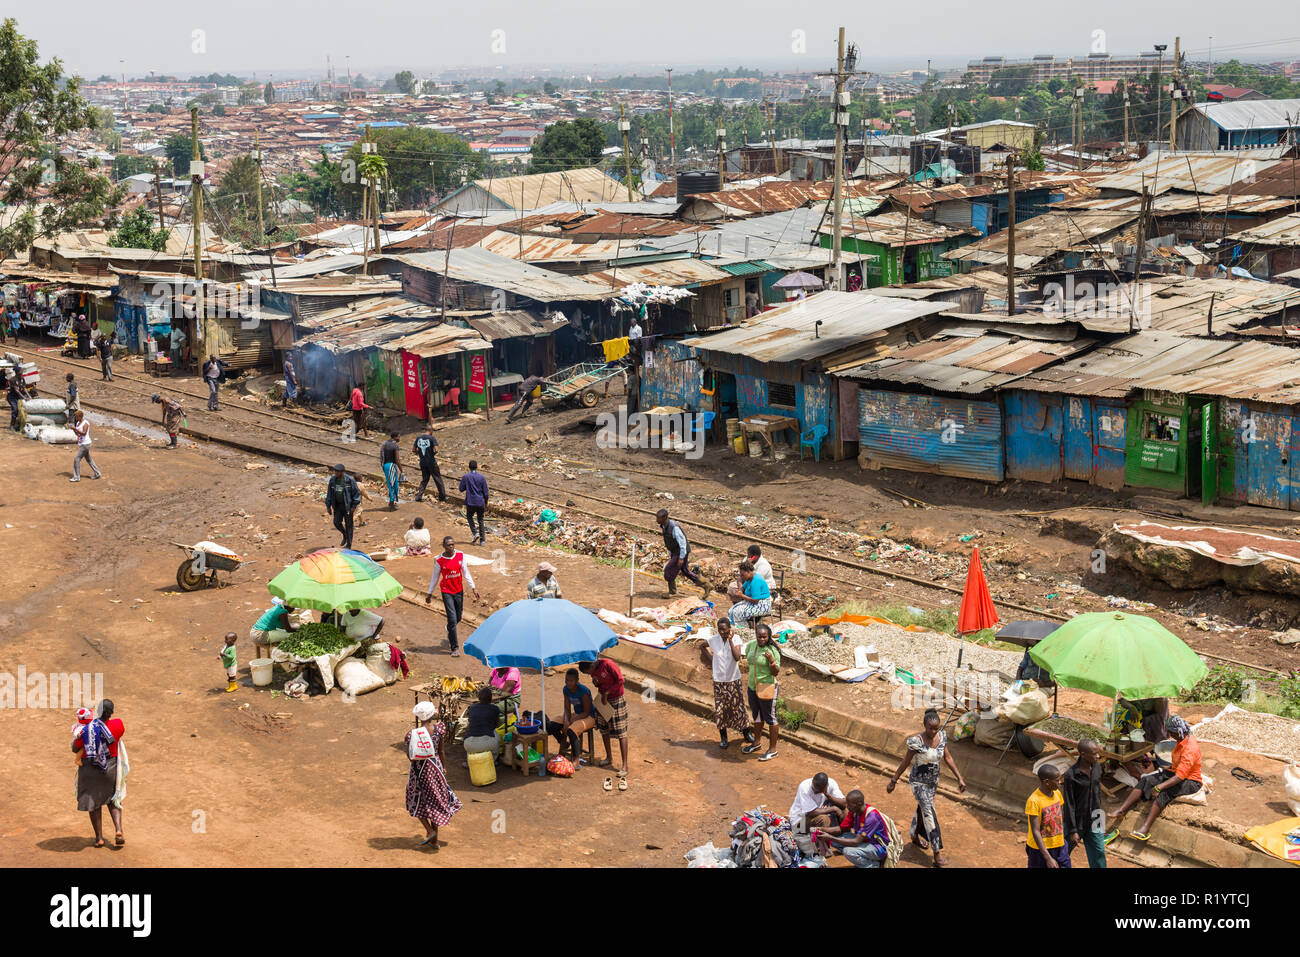 Avis d'une section de Kibera montrant shack de fortune et de logement les résidents allant sur la vie quotidienne, Nairobi, Kenya Banque D'Images